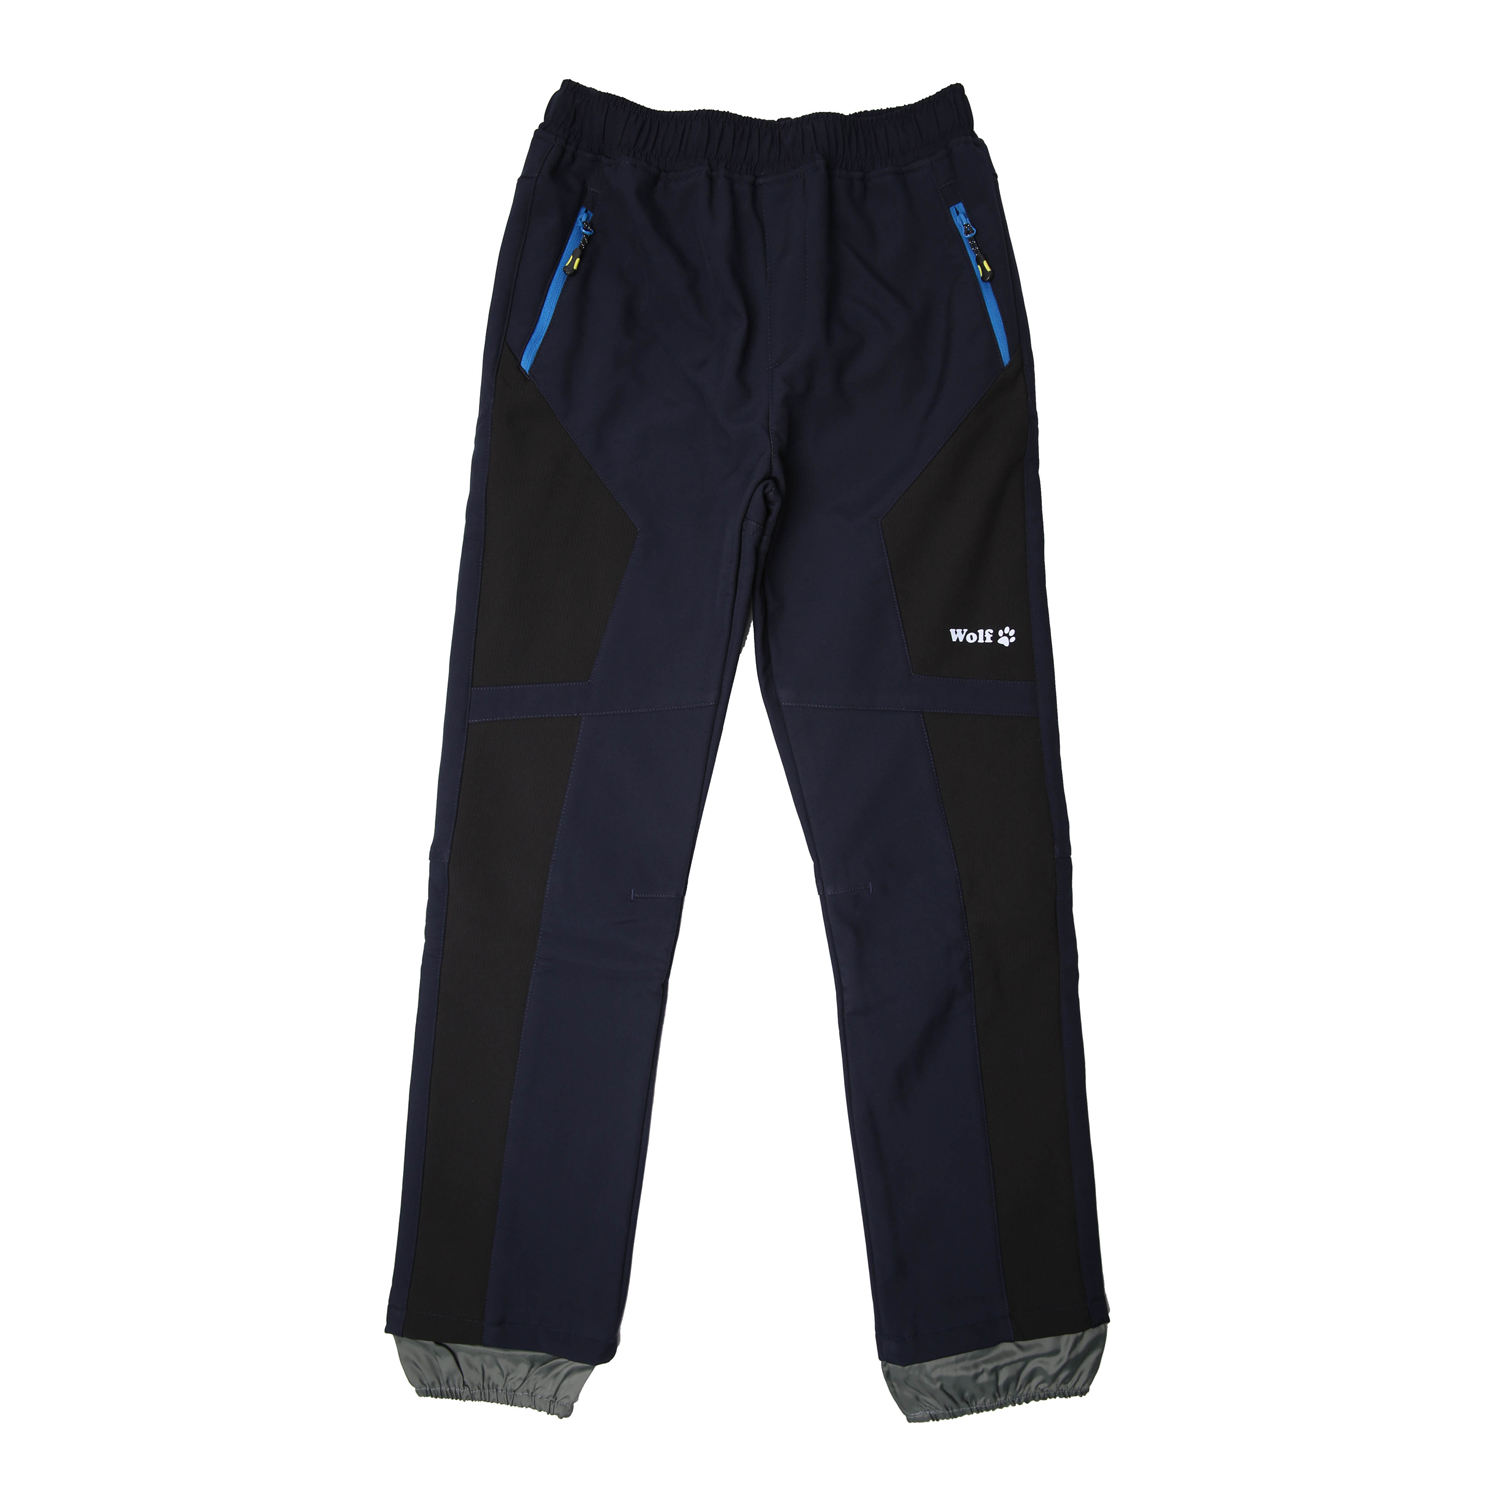 Chlapecké softshellové kalhoty, zateplené - Wolf B2394, tmavě modrá Barva: Modrá tmavě, Velikost: 134